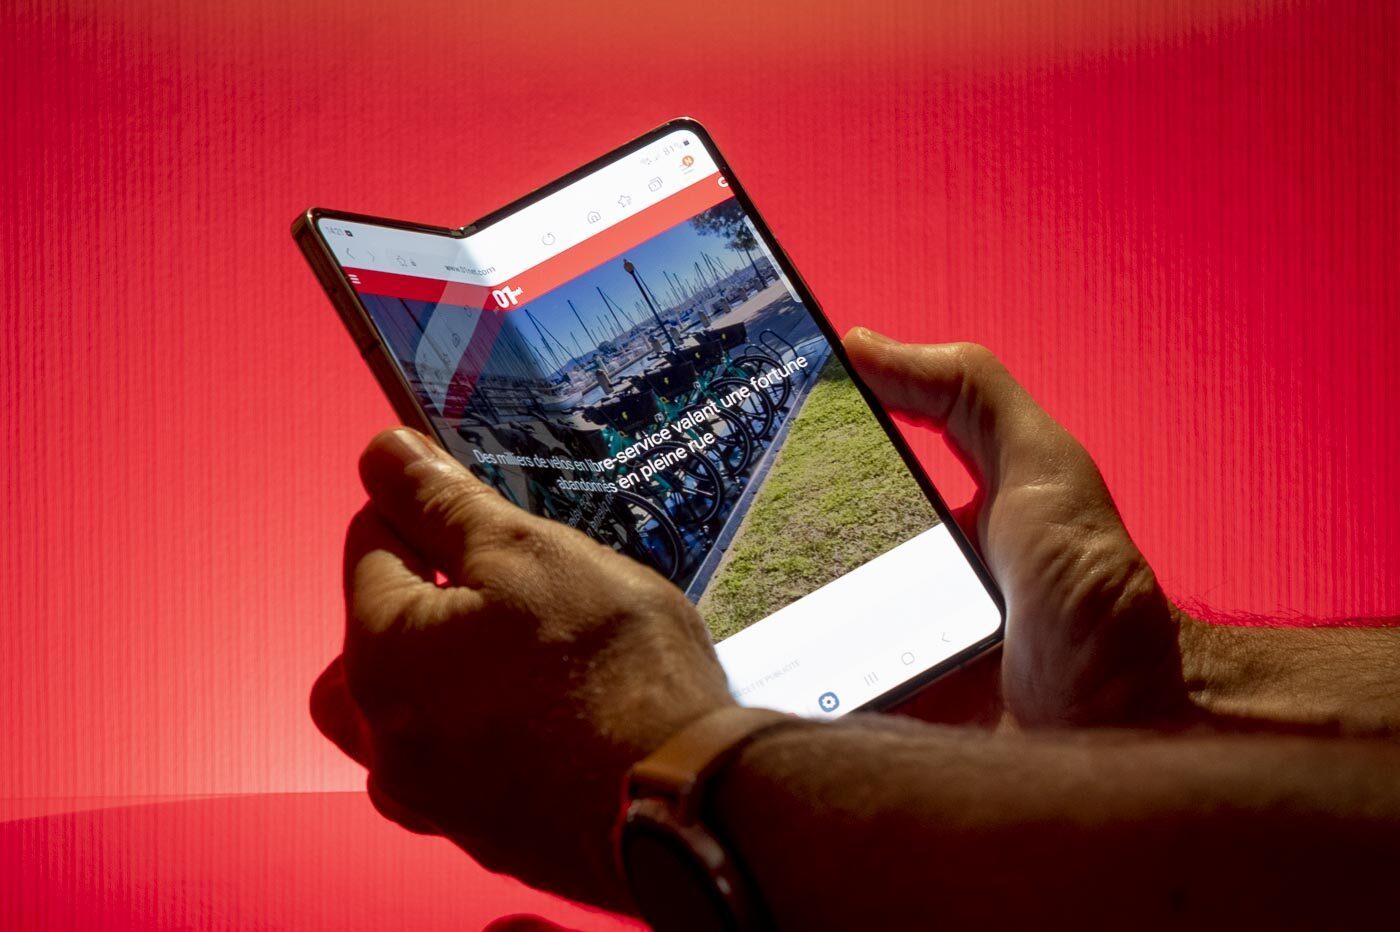 Écran Samsung Galaxy Tab A 8.0 2019, Bloc Complet Compatible avec